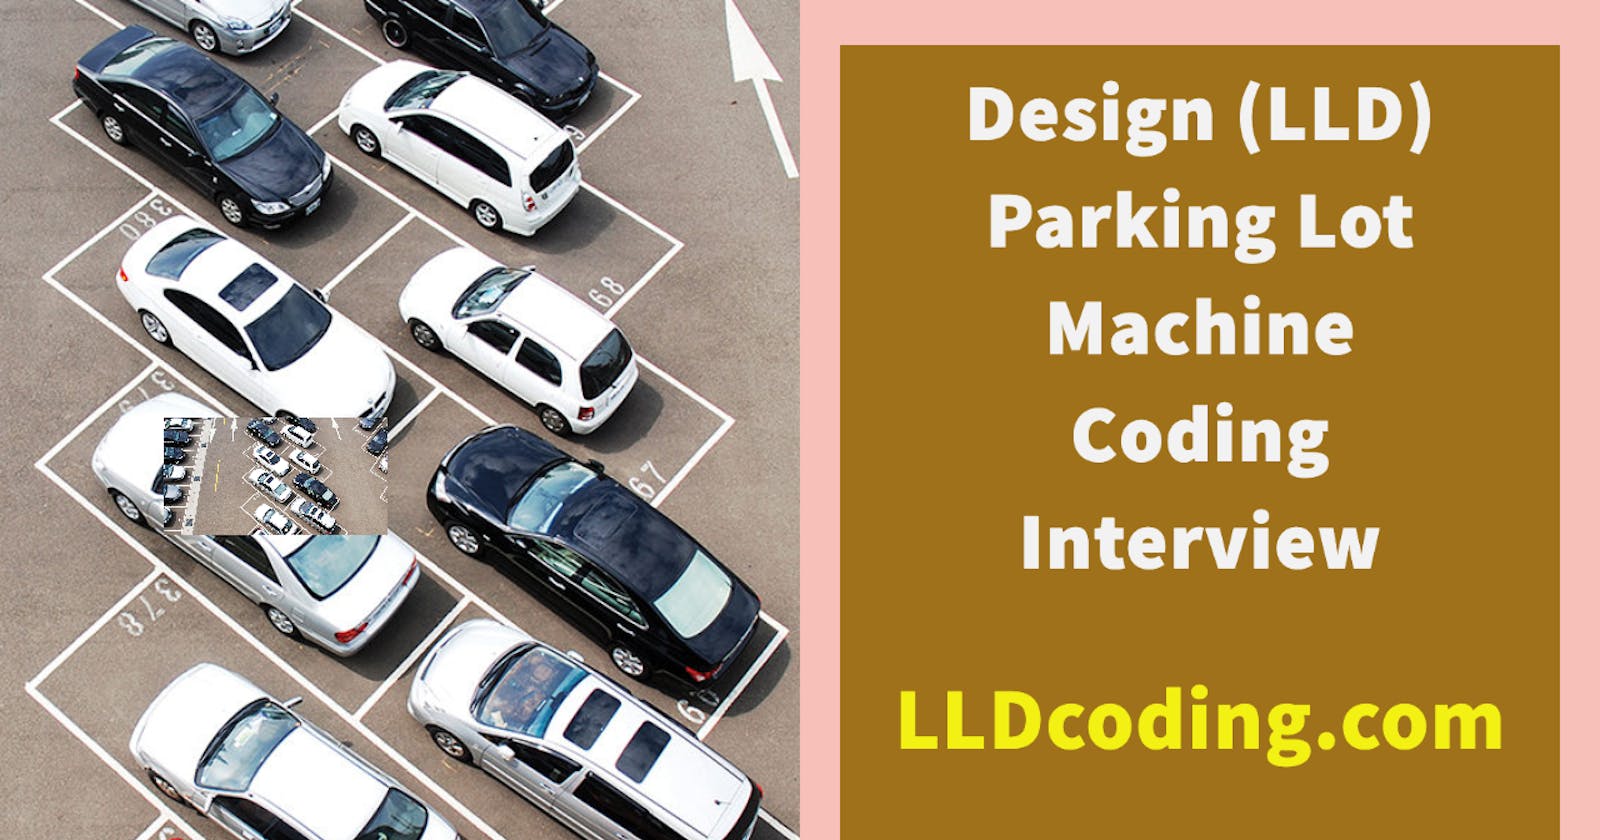 Design (LLD) a Parking Lot - Machine Coding Interview